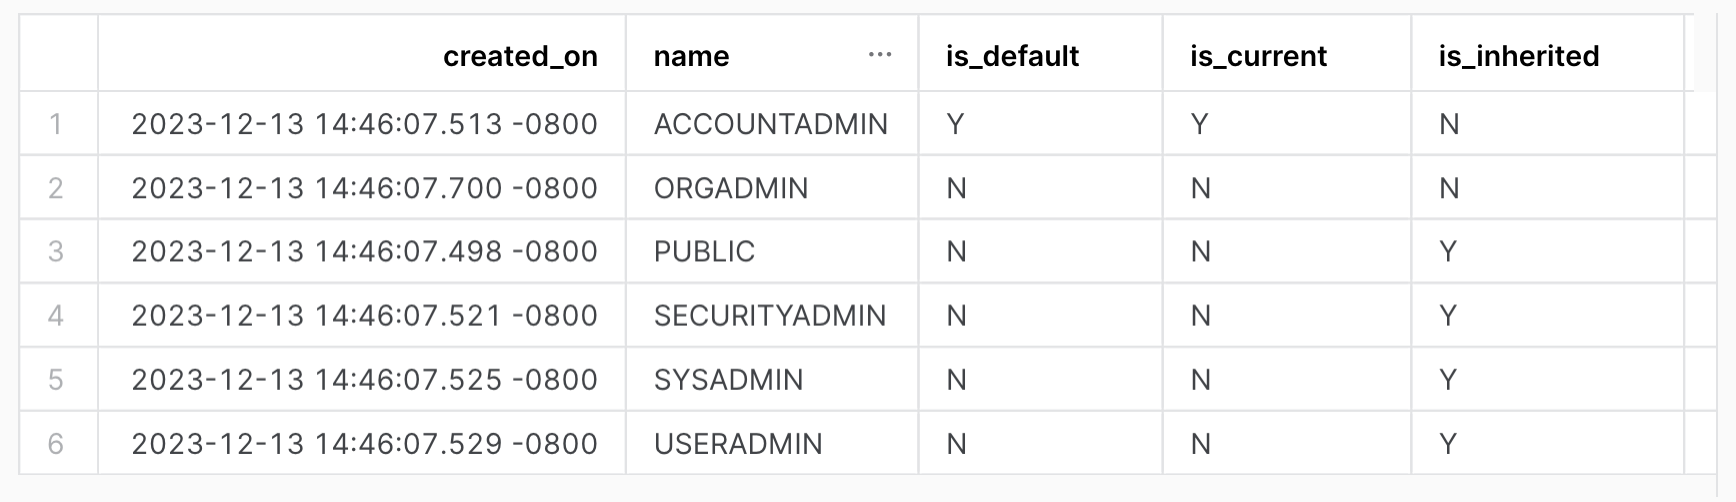 Alle Rollen des Kontos anzeigen. Tabellenausgabe mit den folgenden Spalten: created_on, name, is_default, is_current, is_inherited.